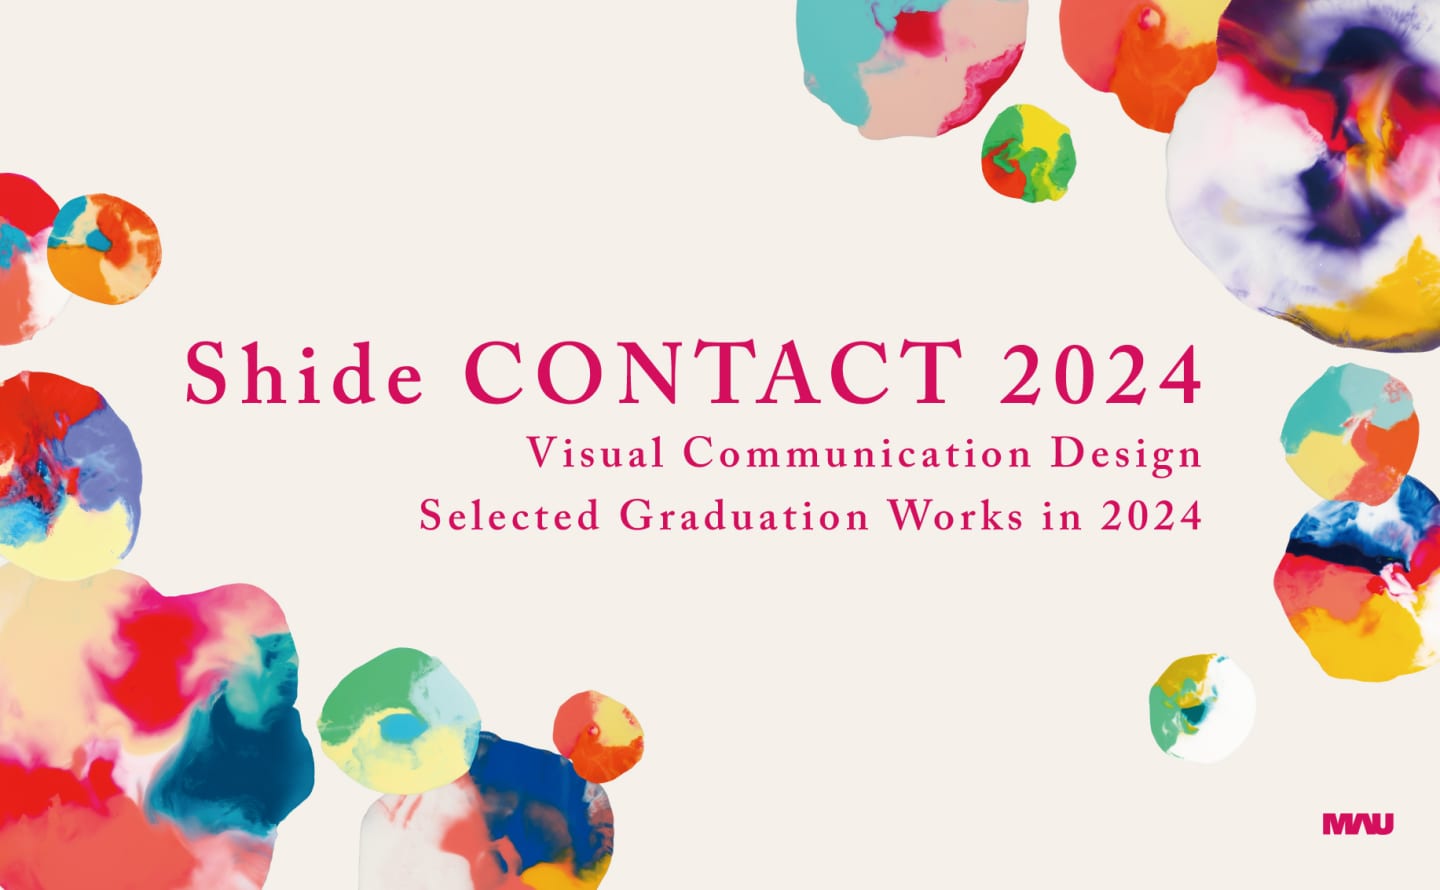 武蔵野美術大学 視覚伝達デザイン学科 2023年度卒業制作選抜展 「shide CONTACT 2024」